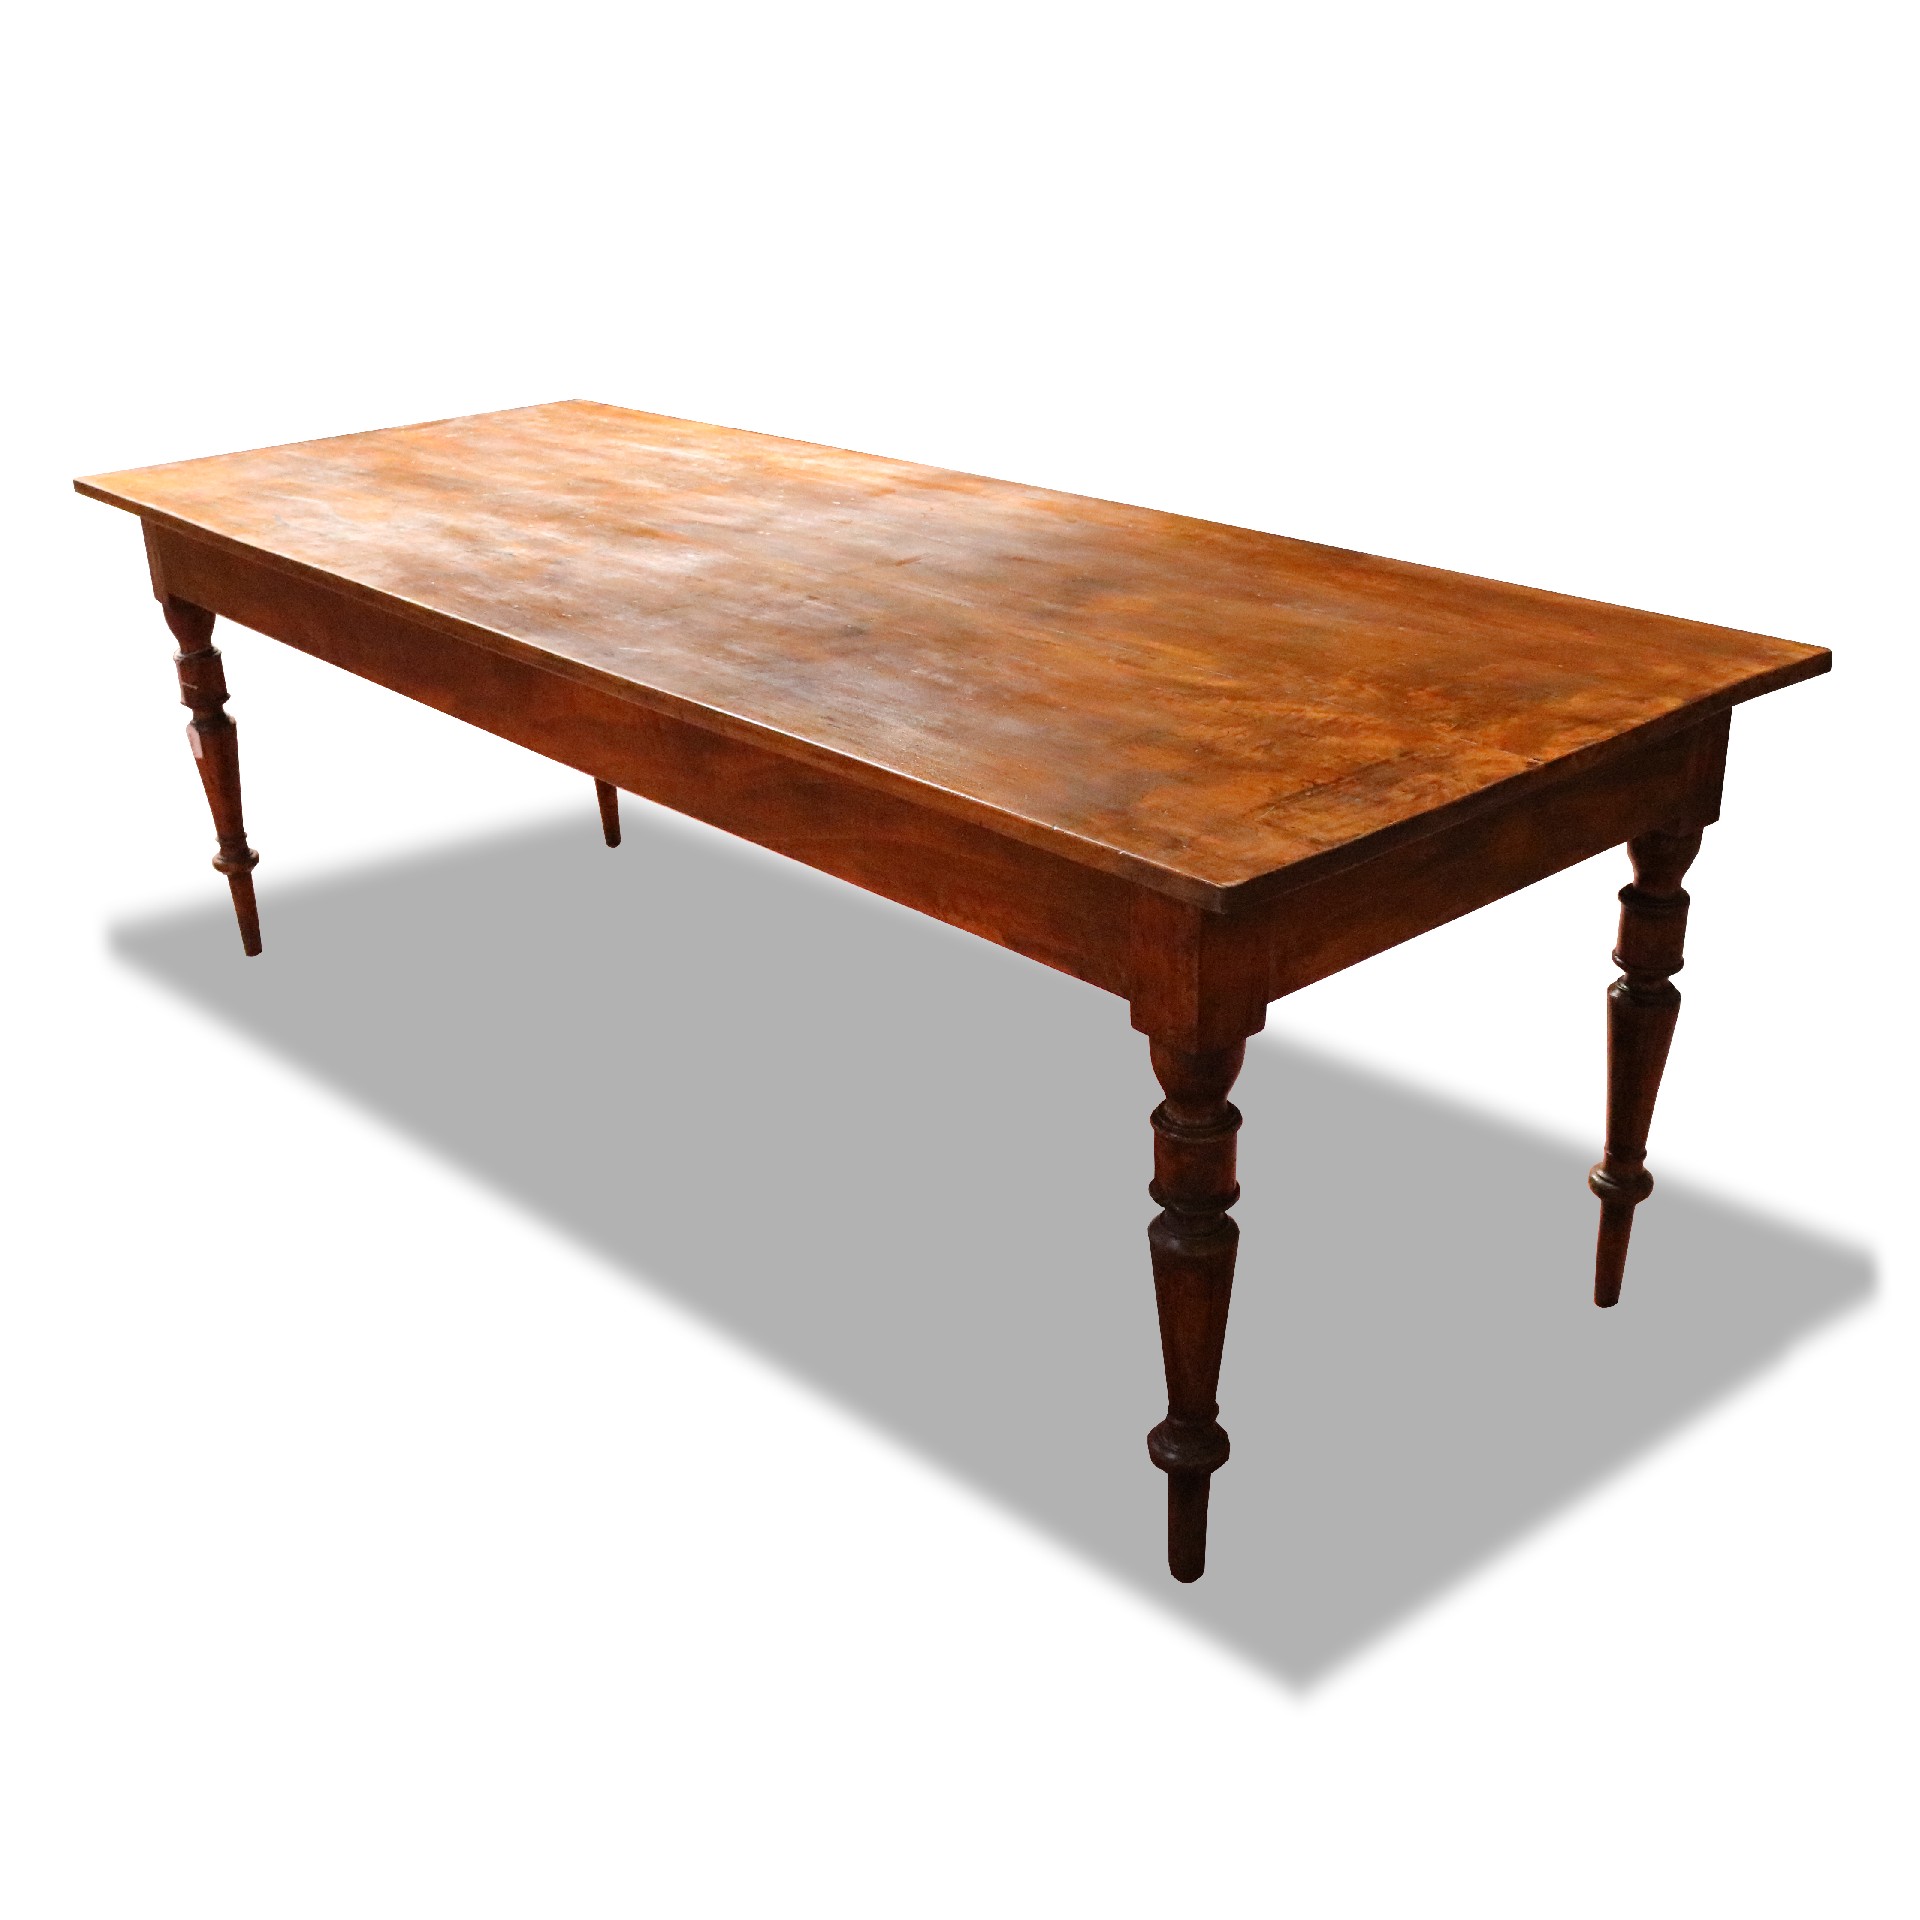 Antico tavolo in legno. - Tavoli Antichi - Mobili antichi - Prodotti - Antichità Fiorillo